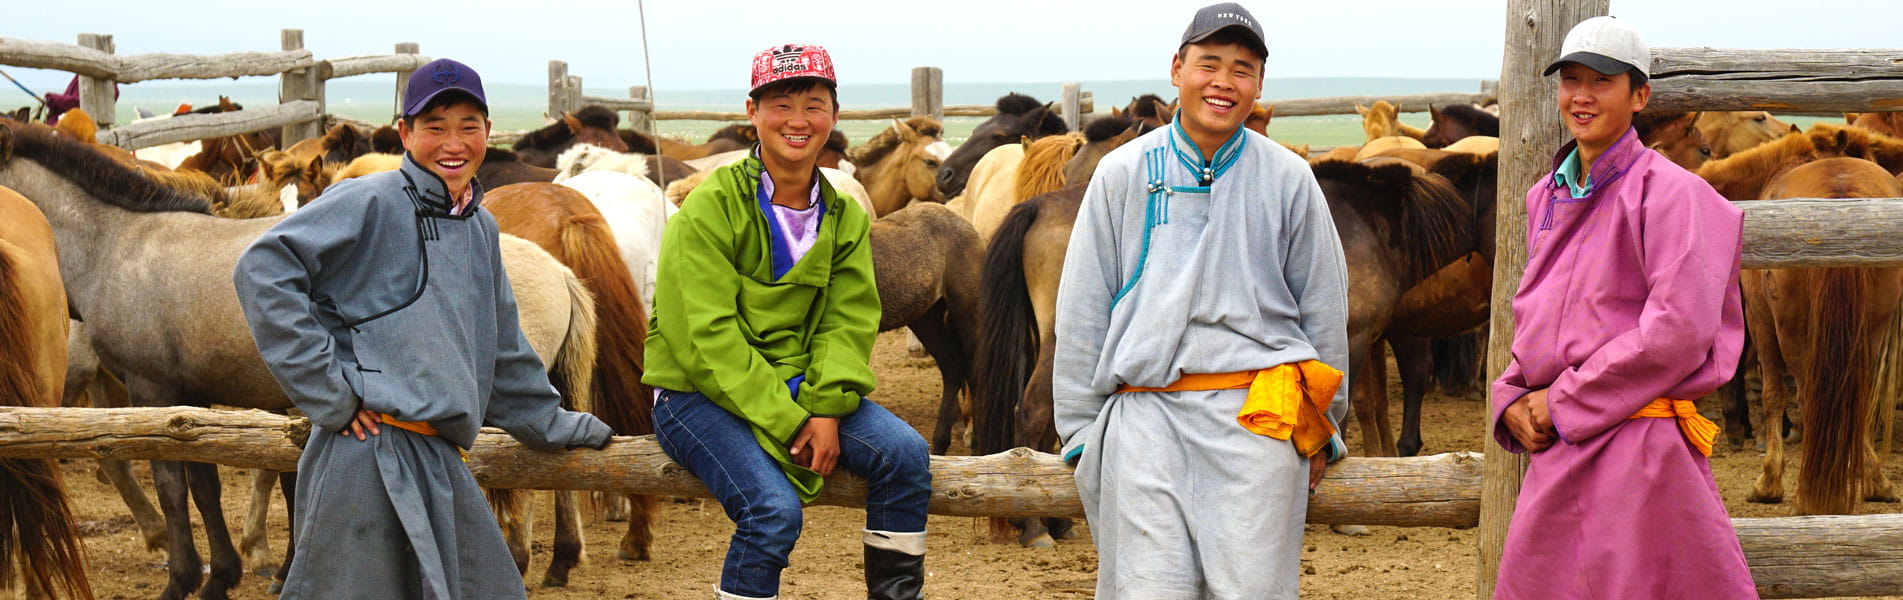 Mongolia people